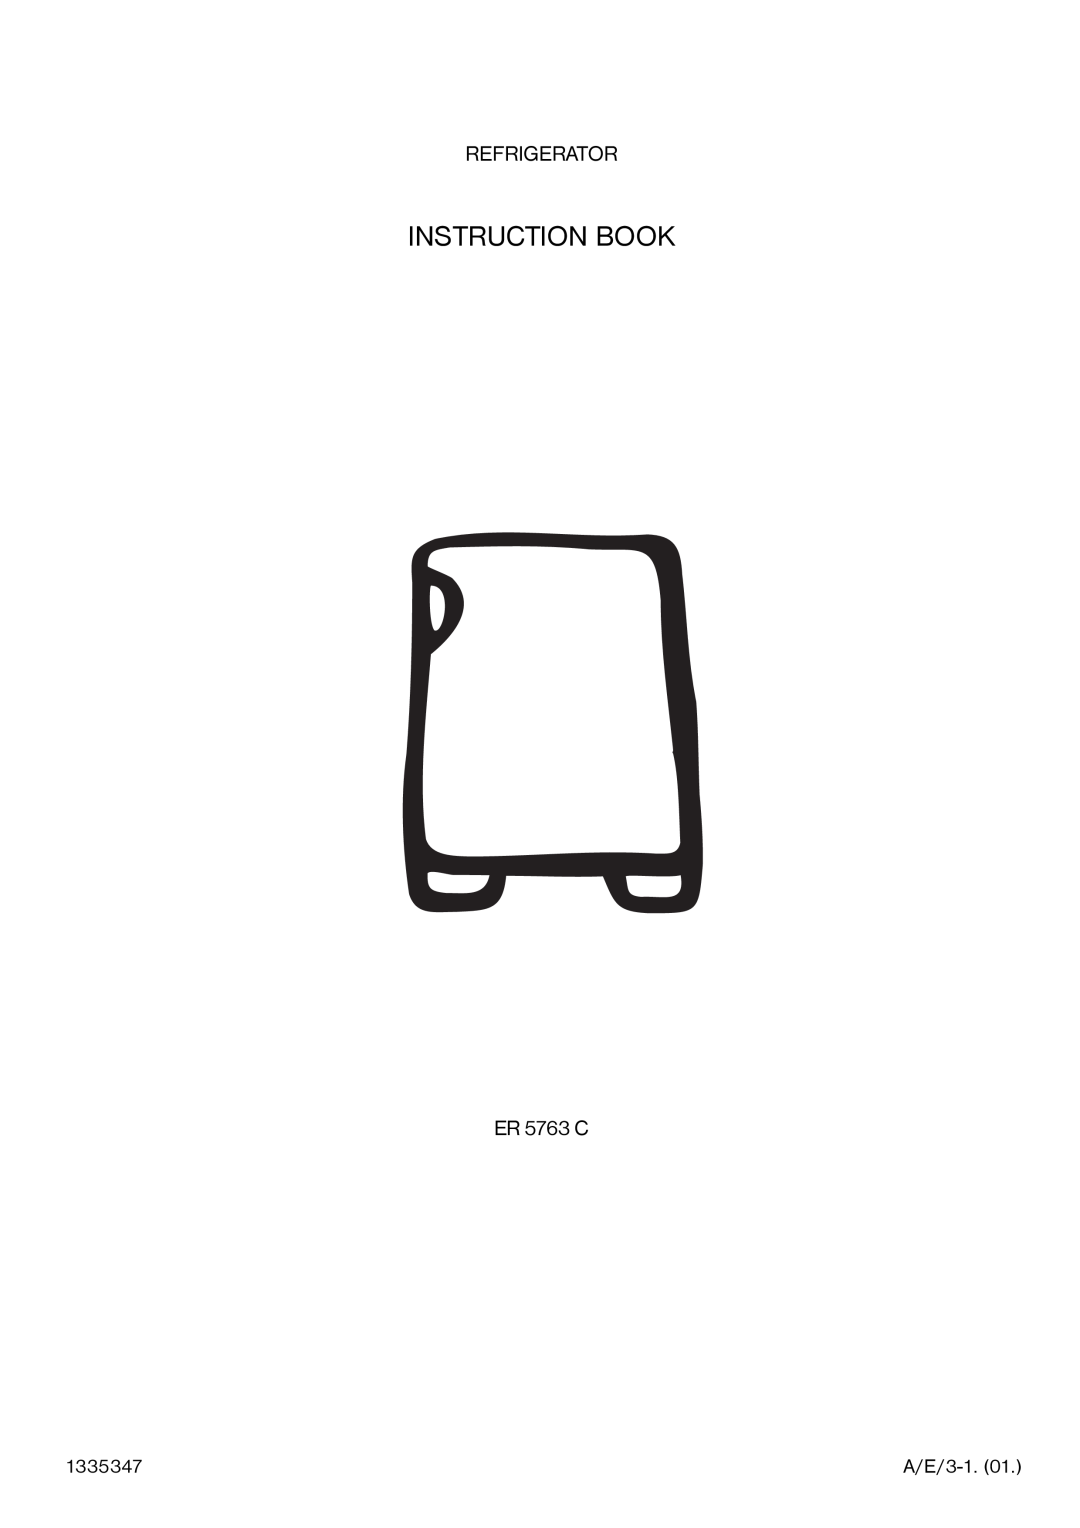 Electrolux ER 5763 C manual Instruction Book, Refrigerator 